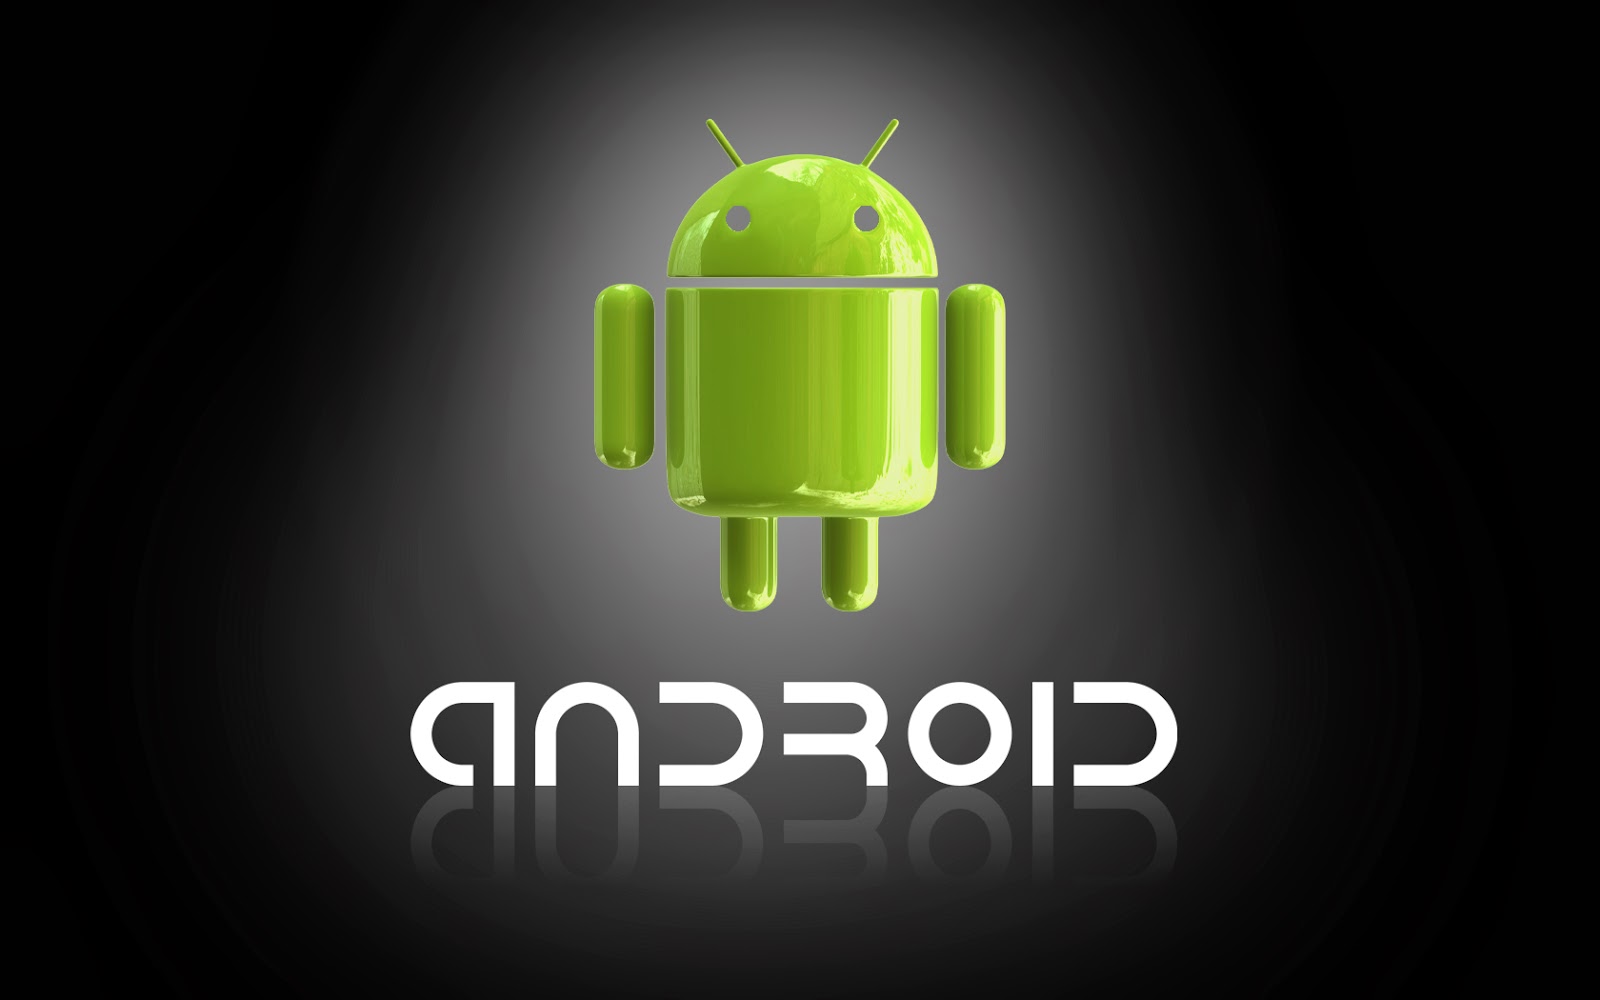 Android wallpaper gratis dan menarik - BBM untuk Android